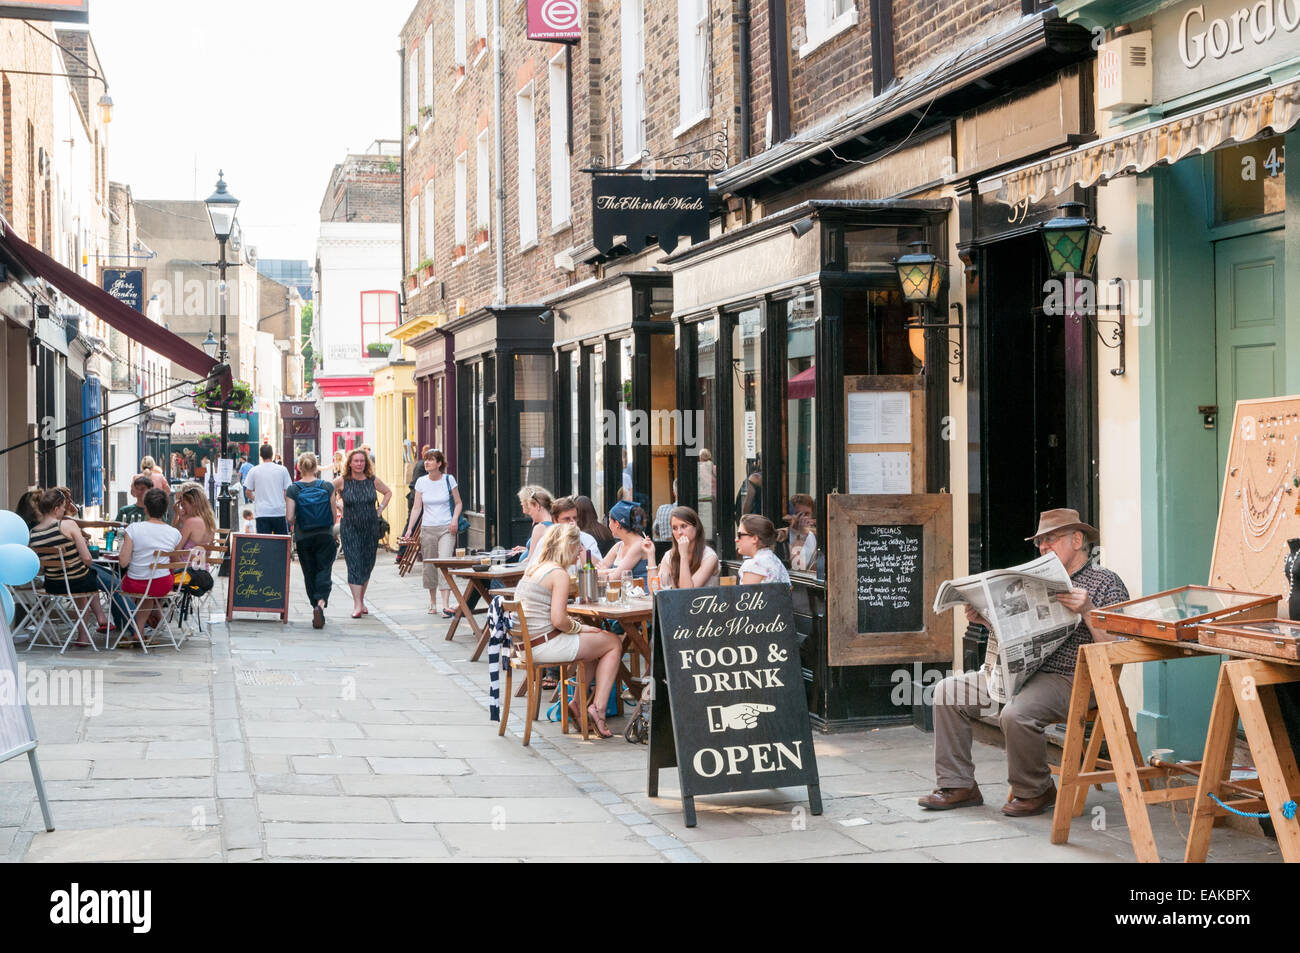 Magasins et cafés dans la région de Camden Passage, Islington, Londres, Angleterre, RU Banque D'Images